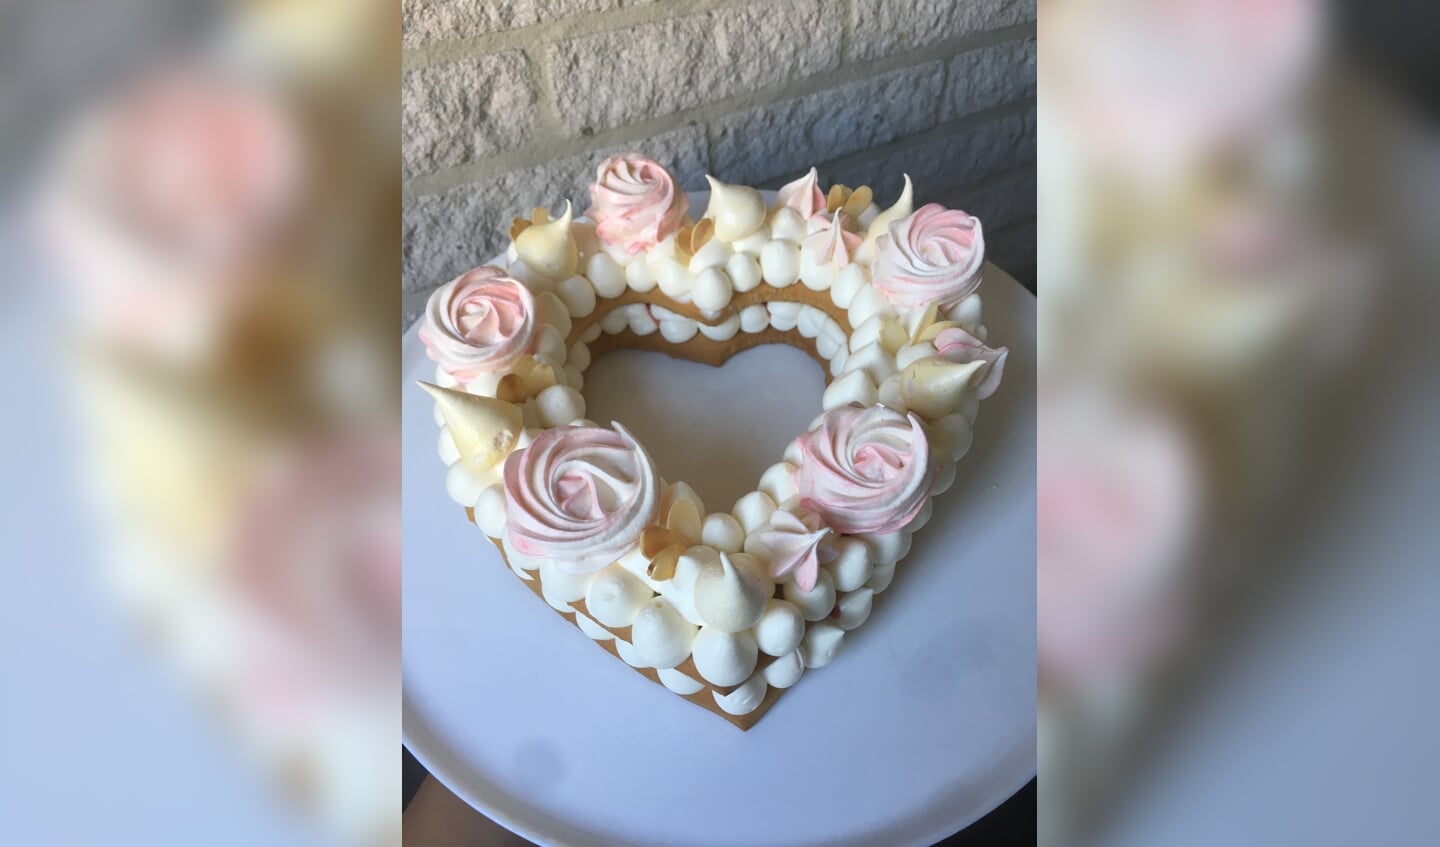 Deze taart maakte Yulia voor haar man toen ze drie jaar getrouwd waren. FOTO EIGEN BEZIT